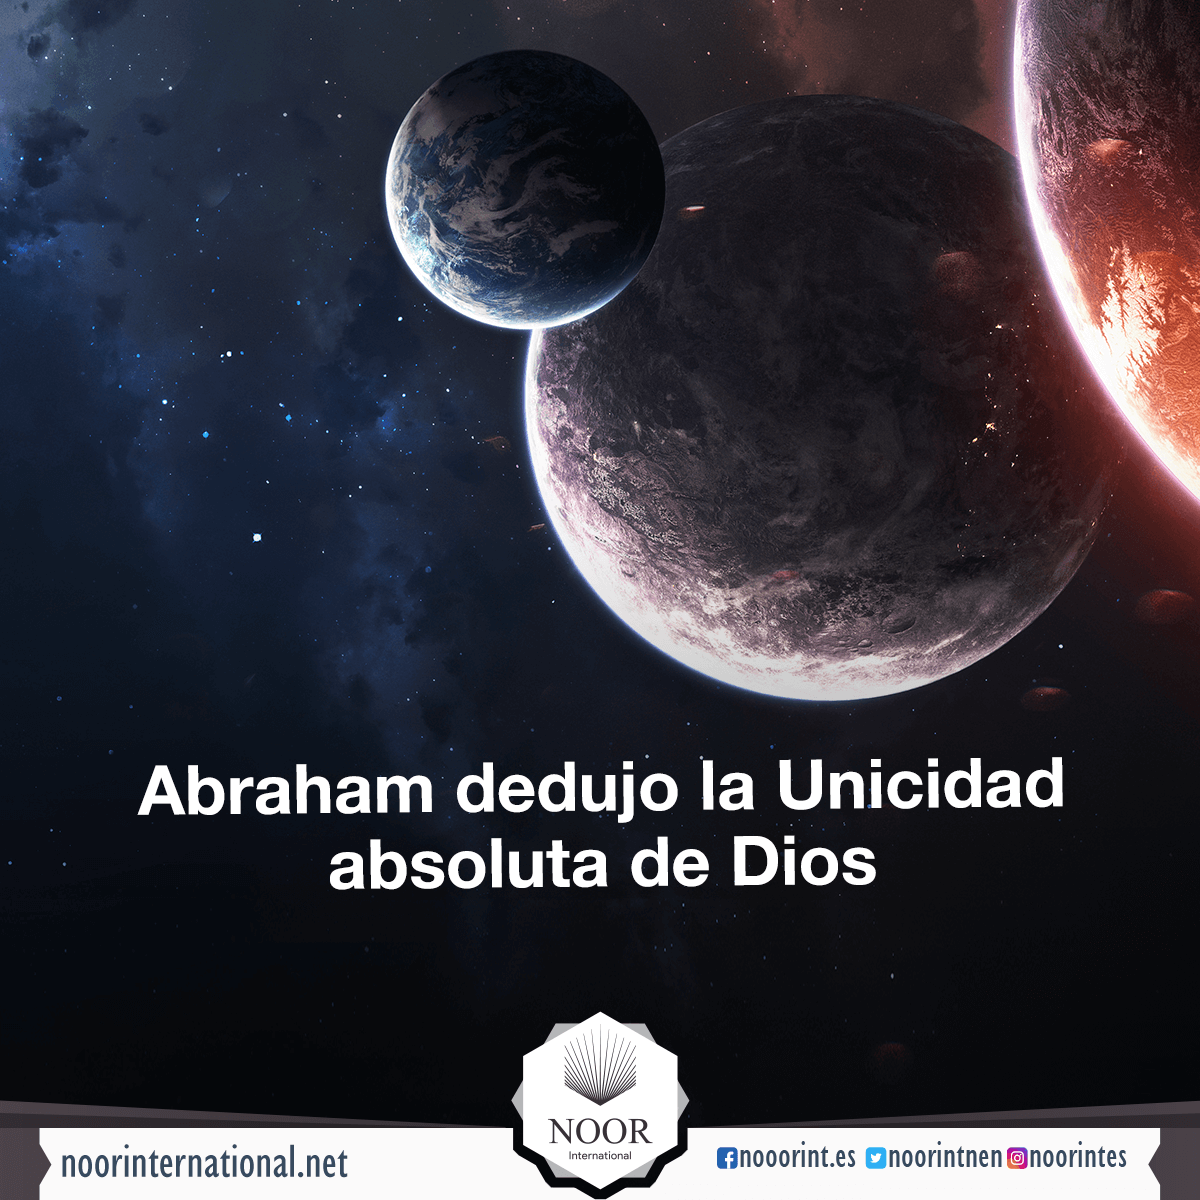 Abraham dedujo la Unicidad absoluta de Dios